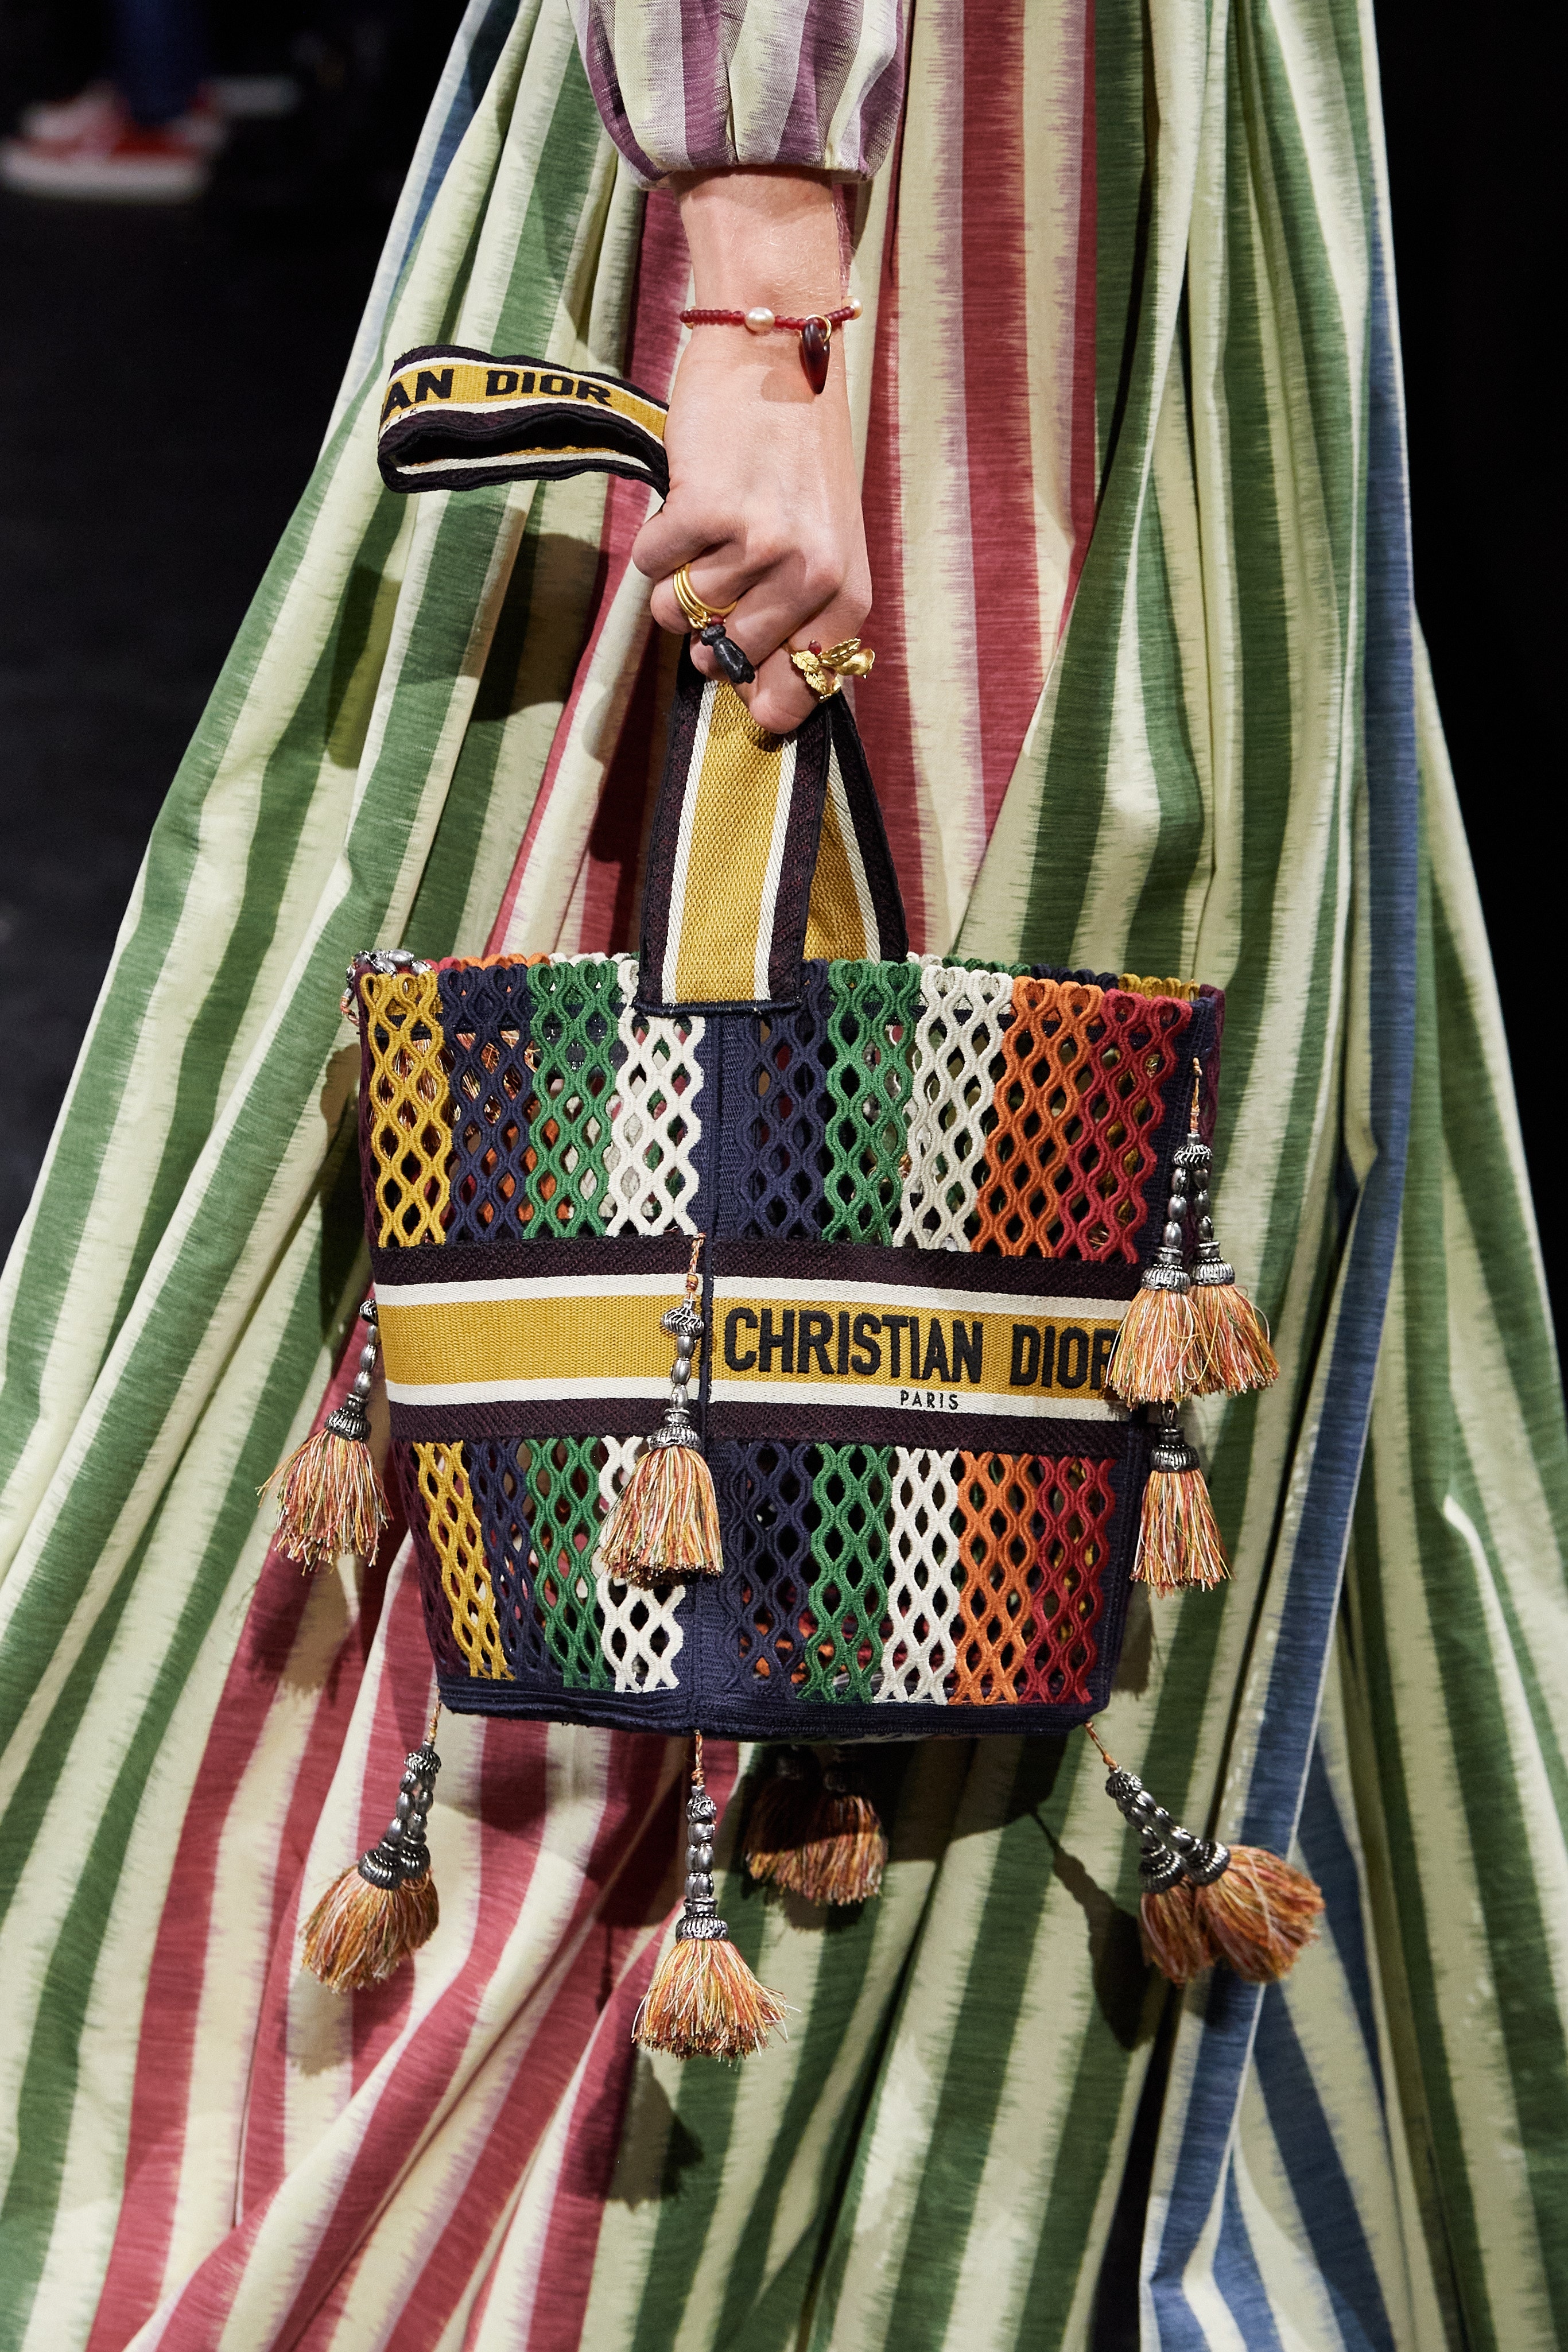 Dior 30 montaigne clutches spring 2021 handbags collection